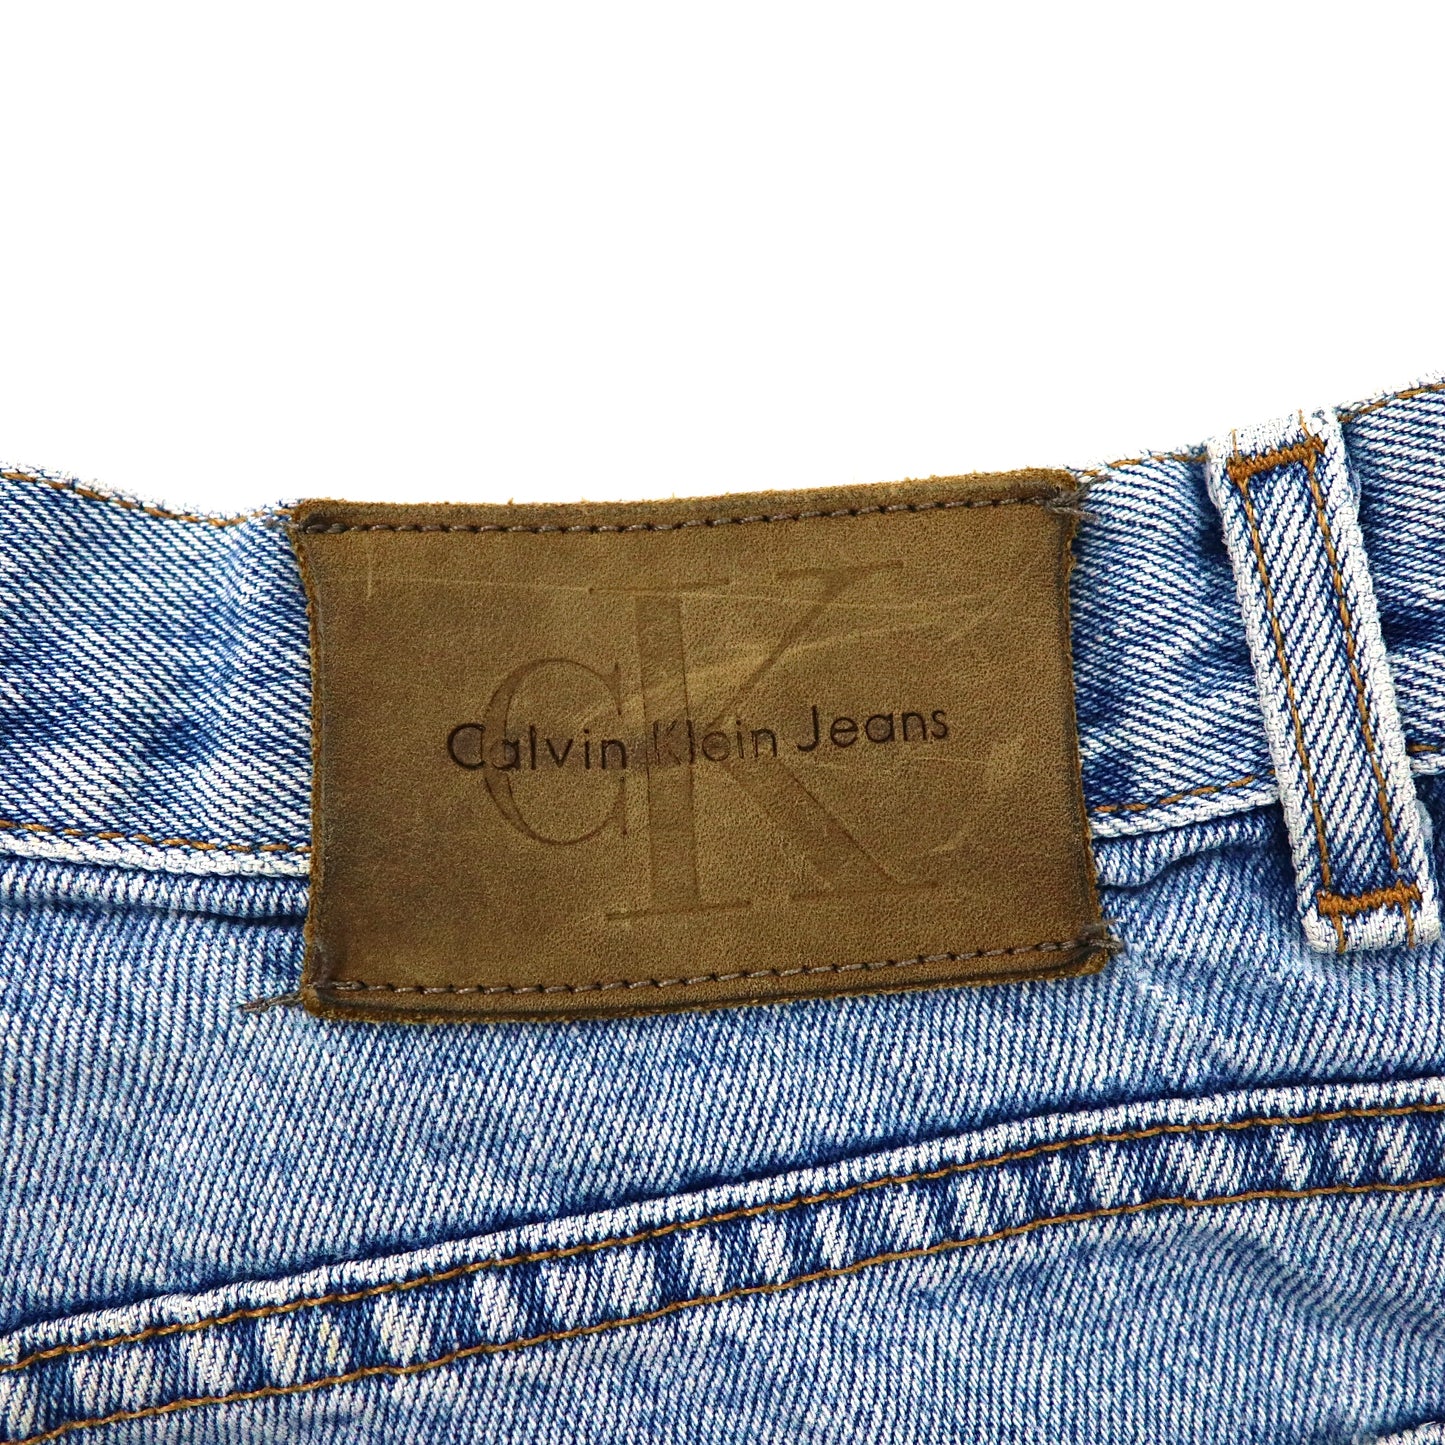 Calvin Klein Jeans デニムショートパンツ ハーフパンツ 32 ブルー アイスウォッシュ 90年代 メキシコ製